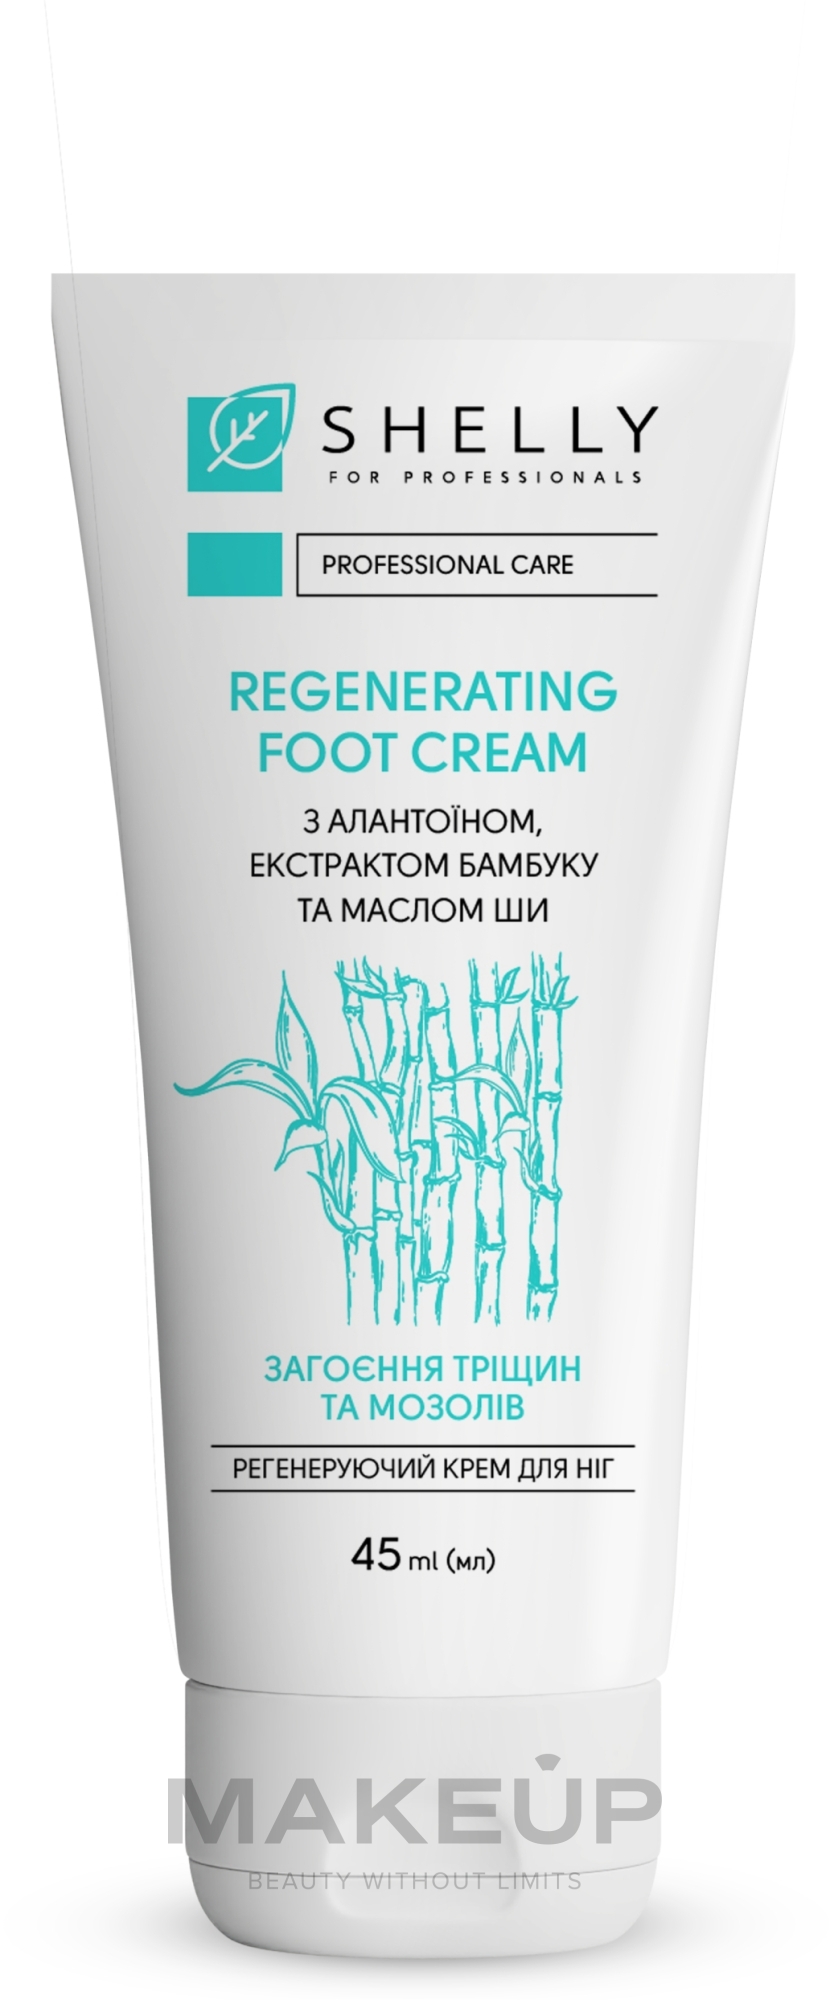 Регенерирующий крем для ног с аллантоином, экстрактом бамбука и маслом ши - Shelly Professional Care Regenerating Foot Cream — фото 45ml